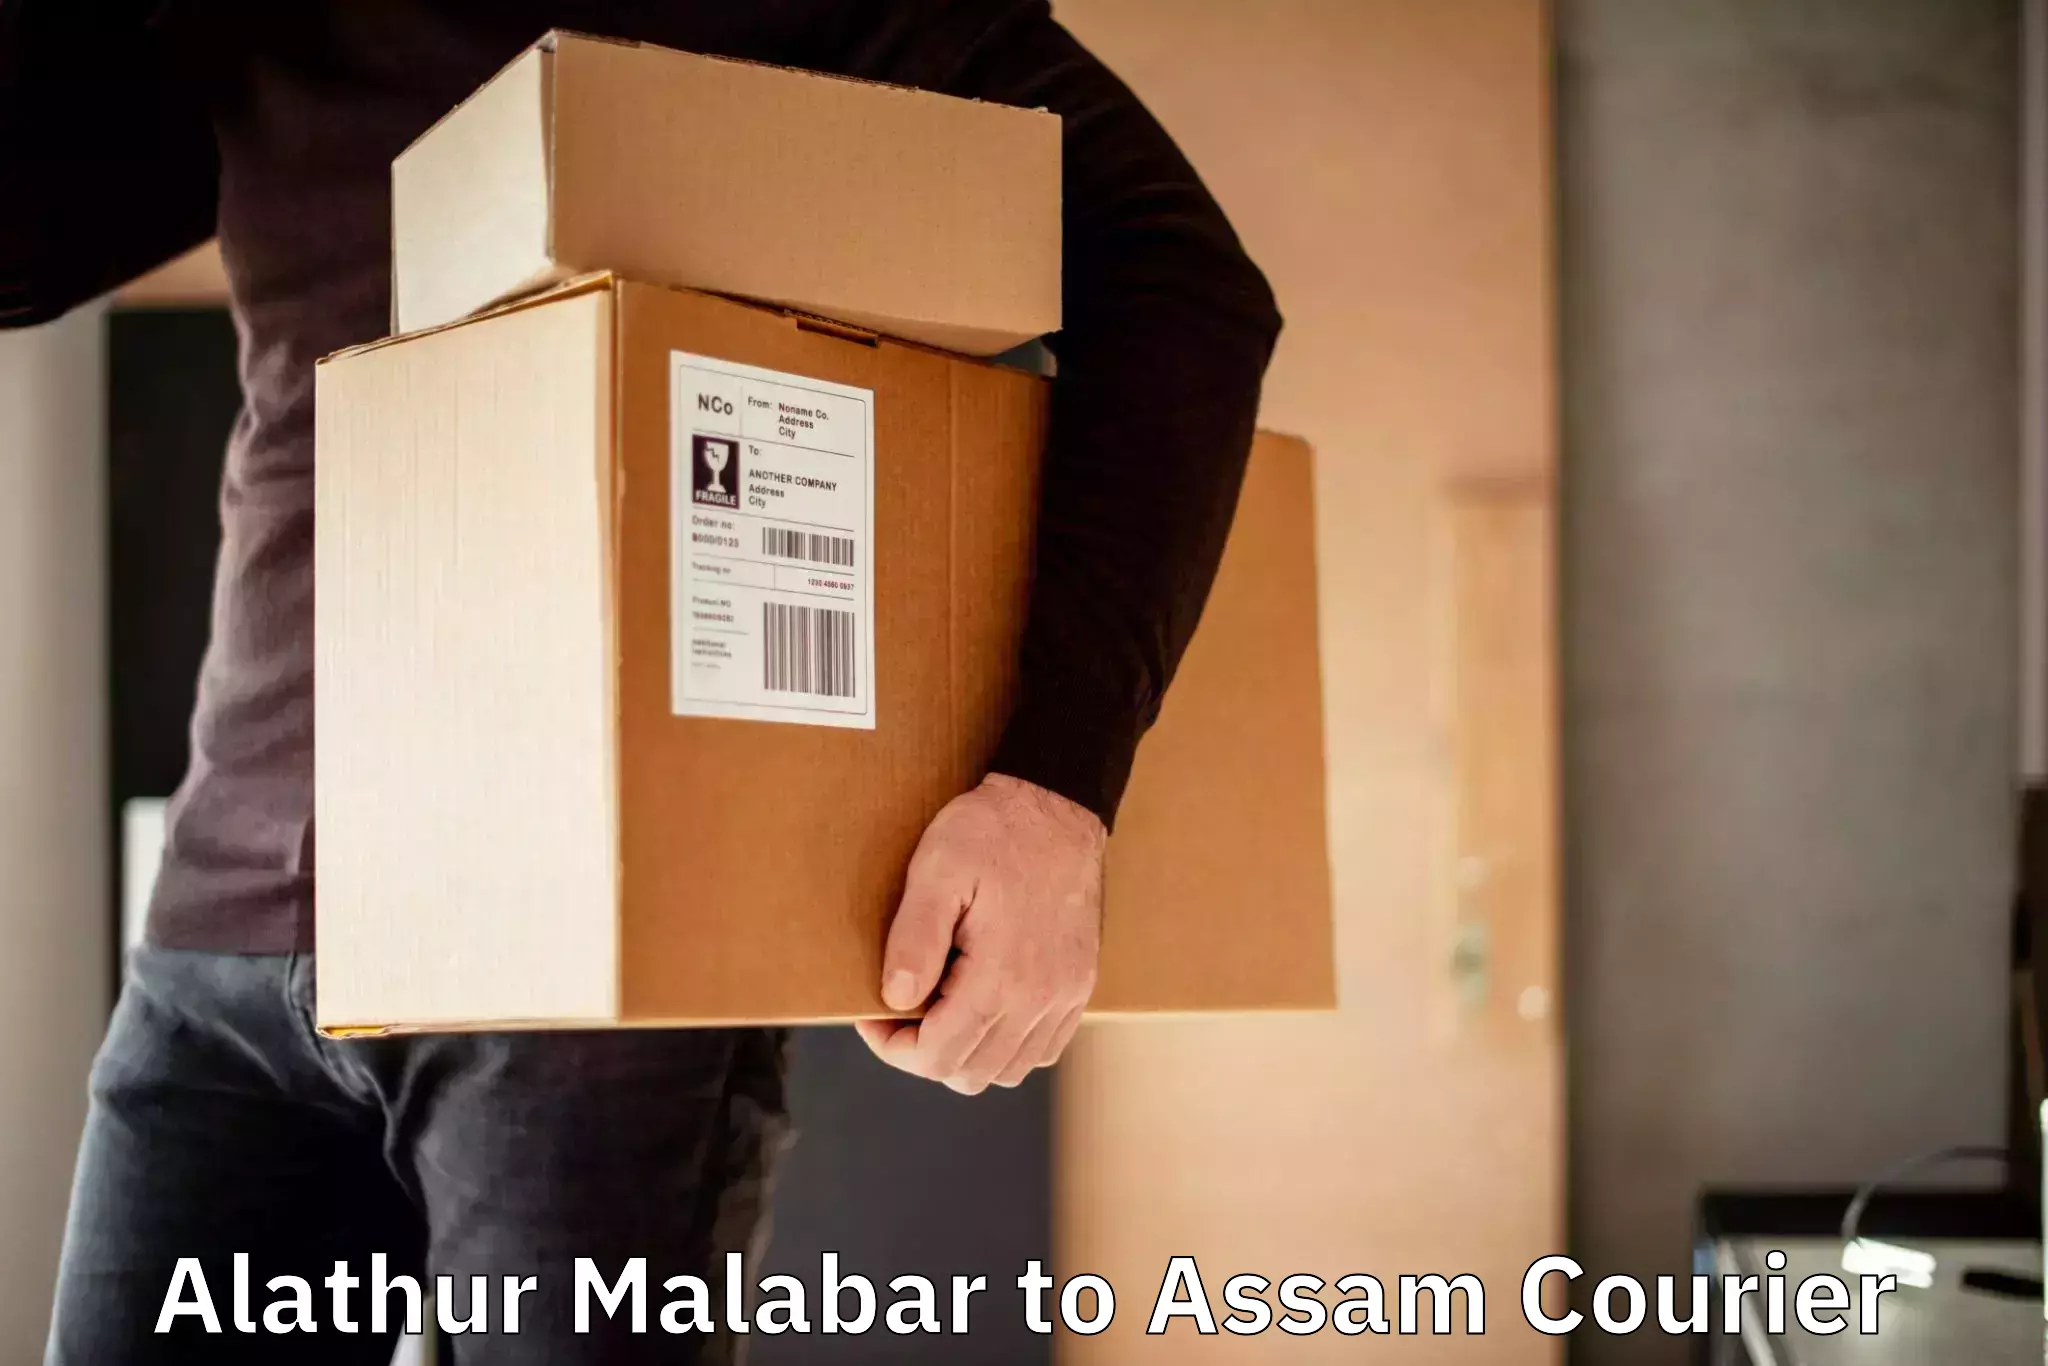 Pharmaceutical courier Alathur Malabar to Ramkrishna Nagar Karimganj